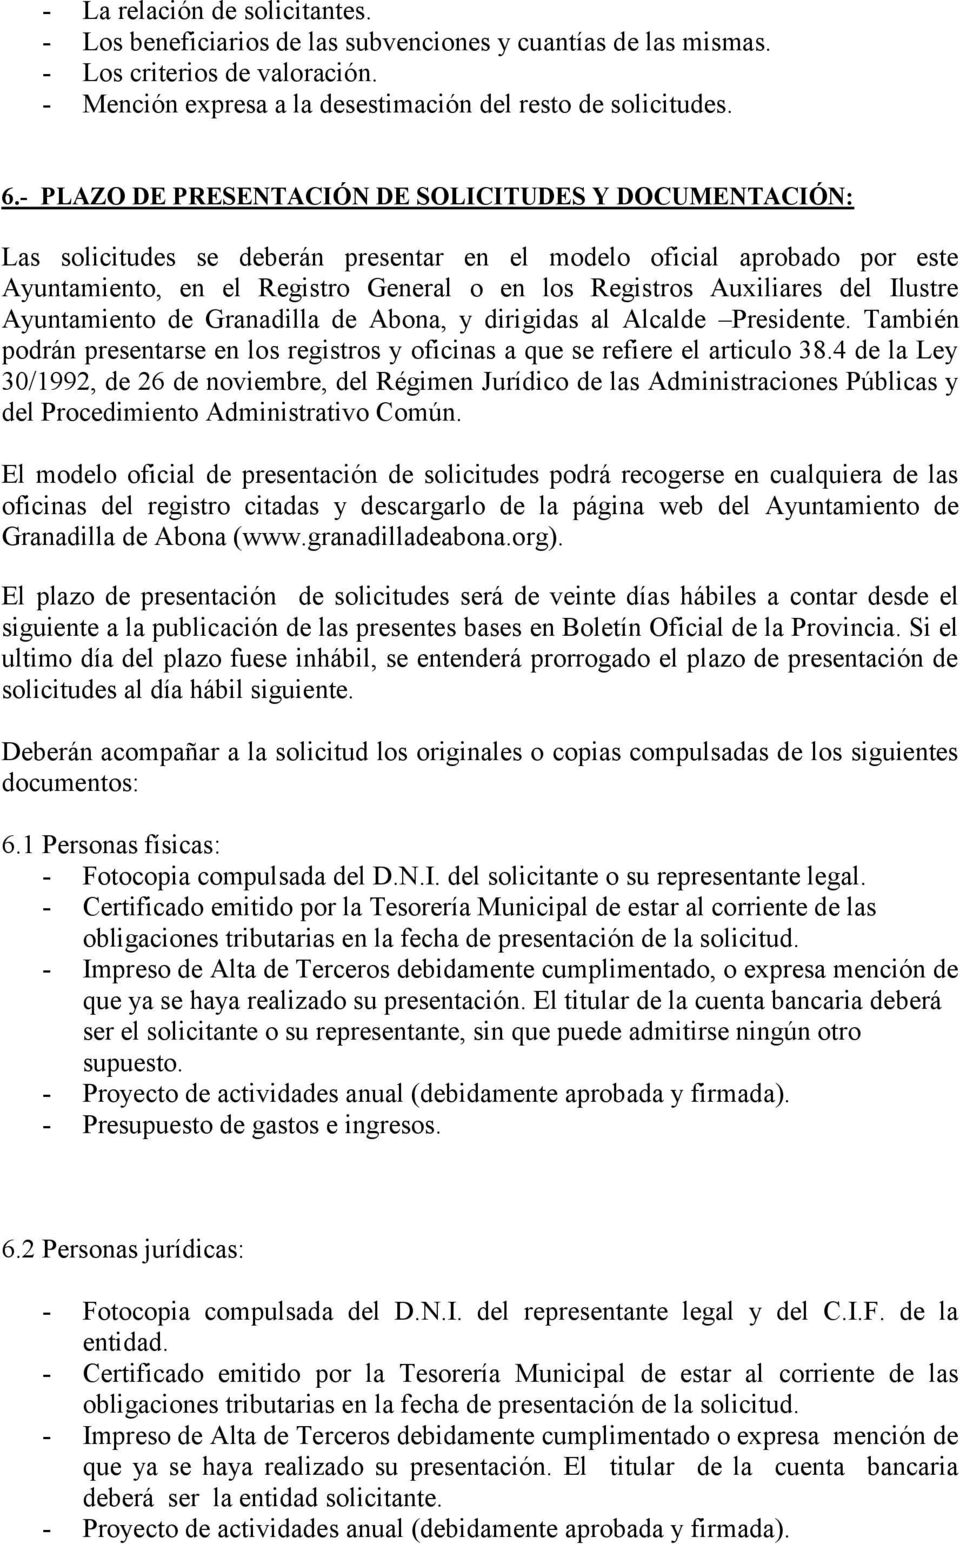 del Ilustre Ayuntamiento de Granadilla de Abona, y dirigidas al Alcalde Presidente. También podrán presentarse en los registros y oficinas a que se refiere el articulo 38.